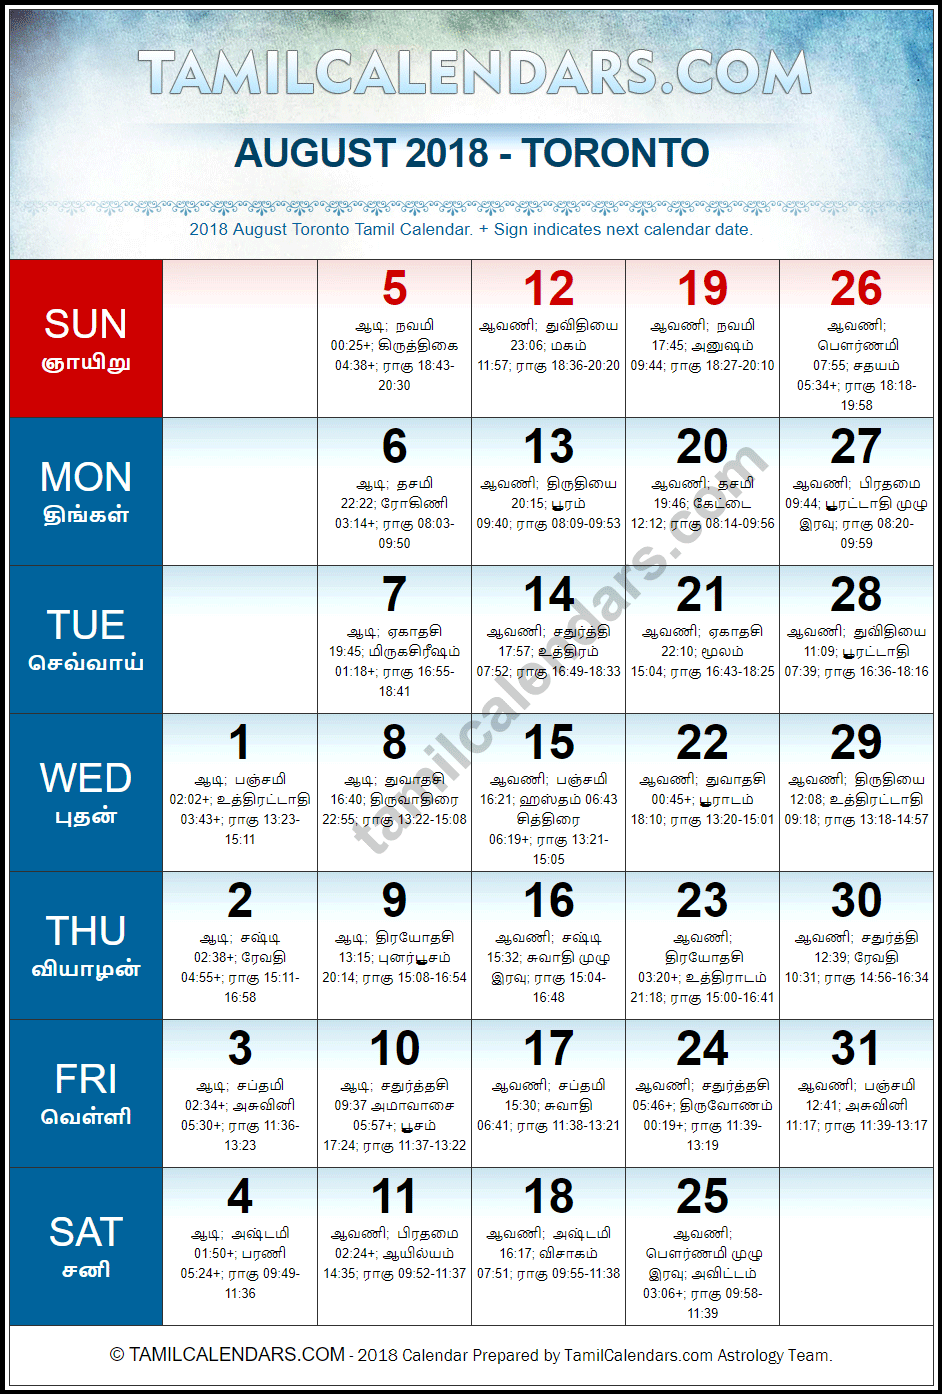 August 2018 Tamil Calendar for Toronto, Canada